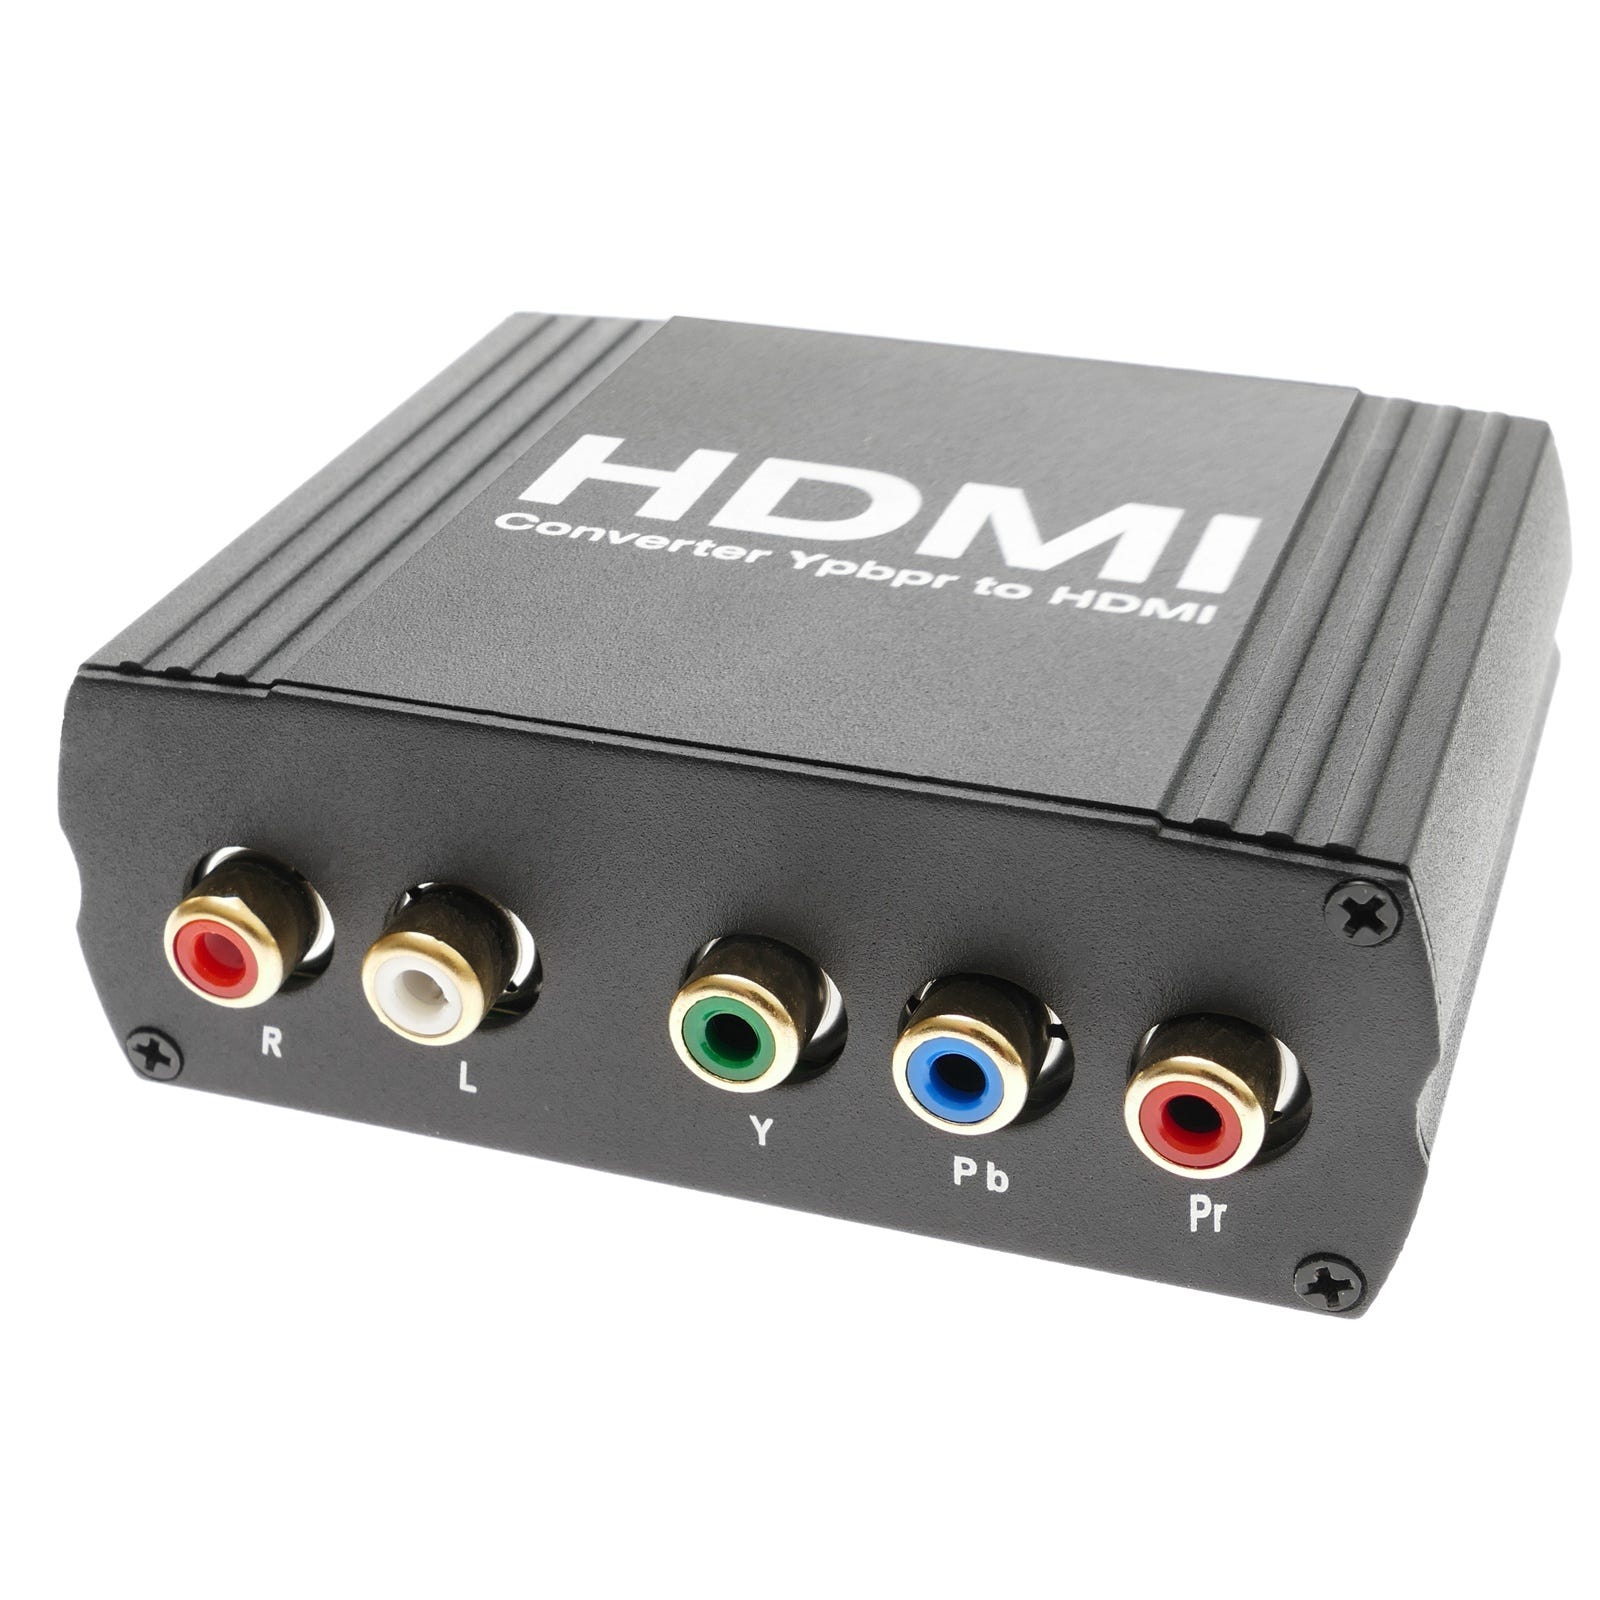 Convertisseur RGB YPbPr femelle et audio vers HDMI femelle dans un